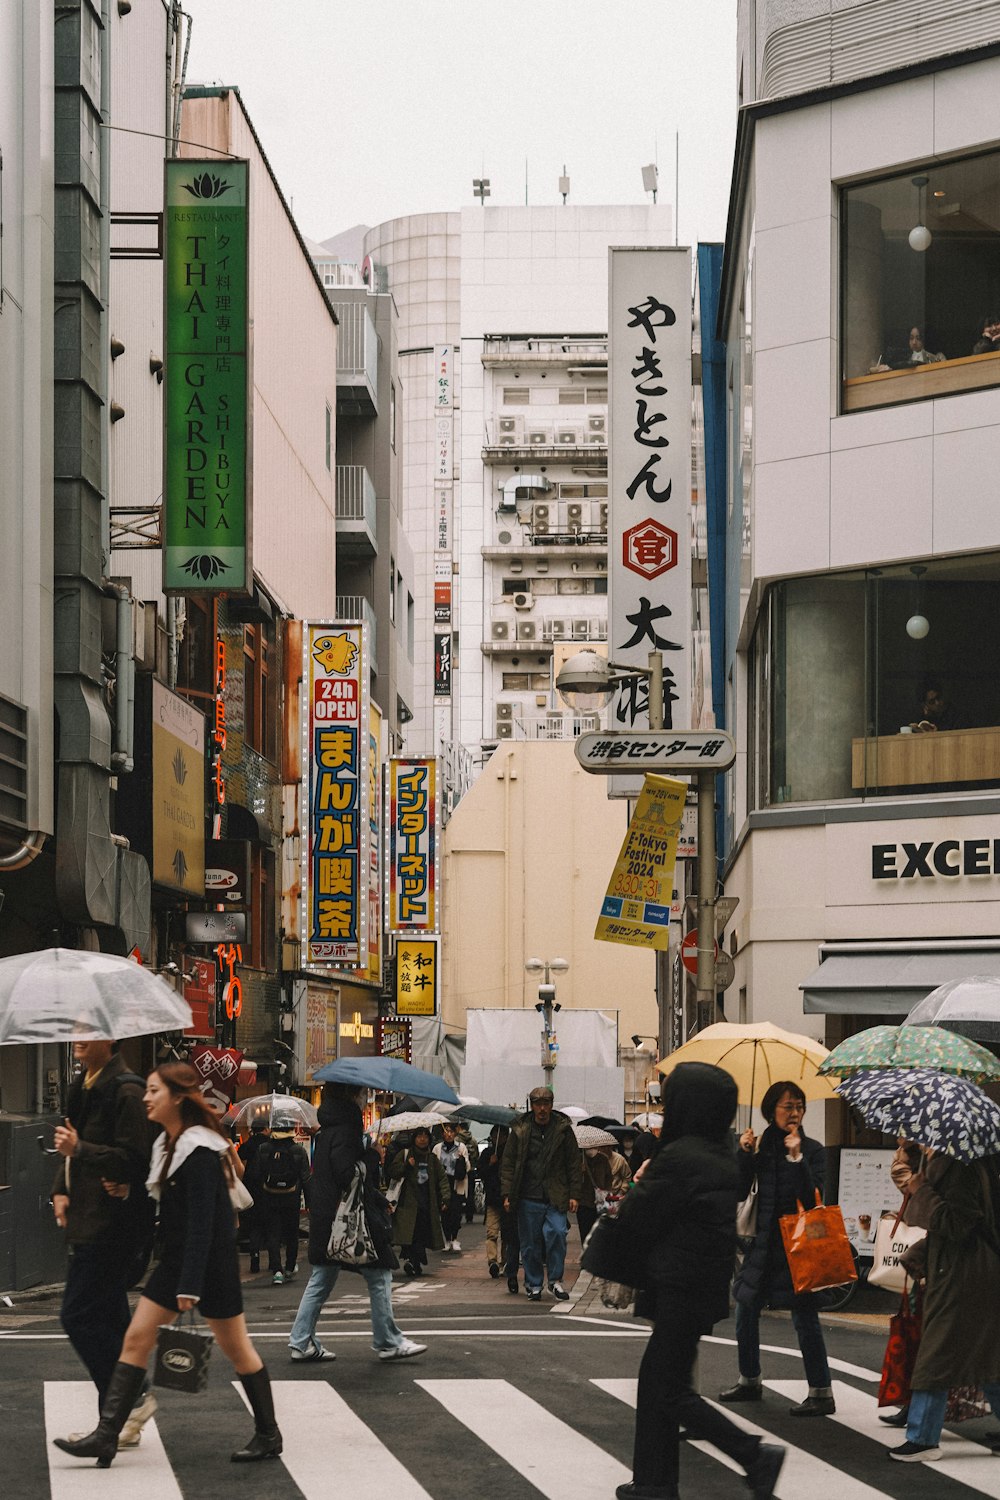 Eine Gruppe von Menschen, die mit Regenschirmen über eine Straße gehen